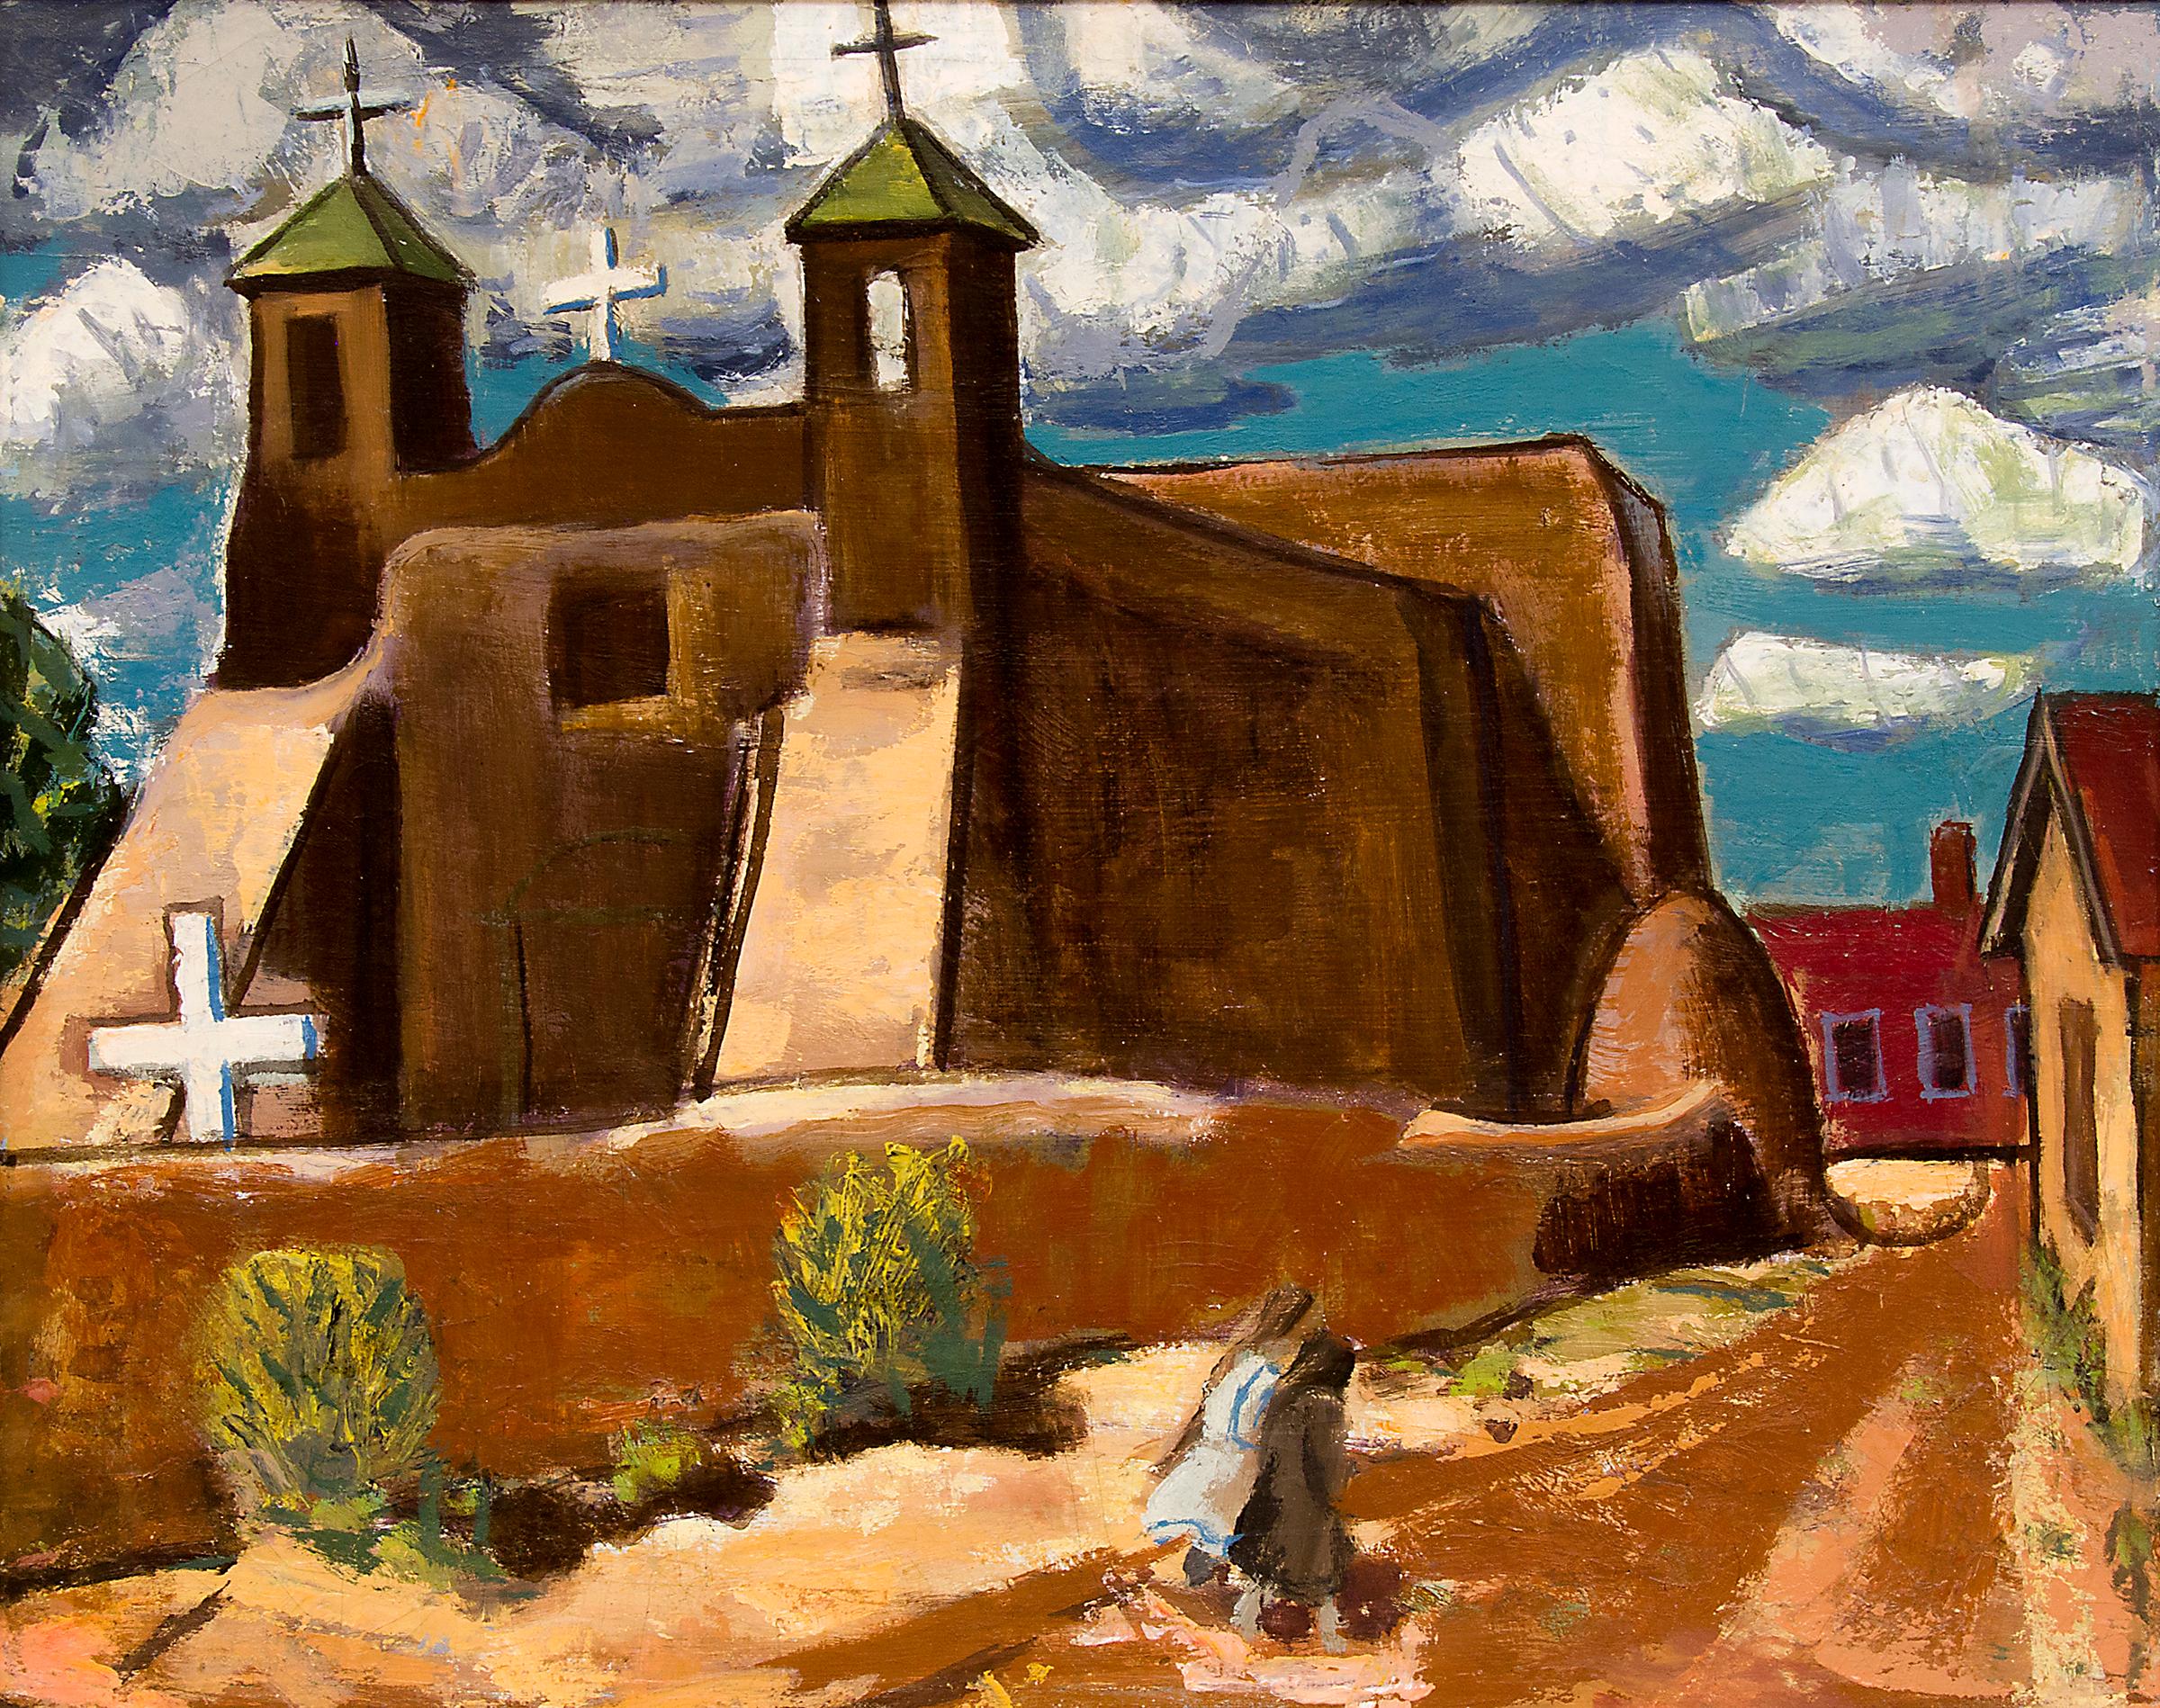 Church Adobe, Nouveau-Mexique, peinture à l'huile moderniste du sud-ouest des années 1940 - Painting de Paul Kauvar Smith